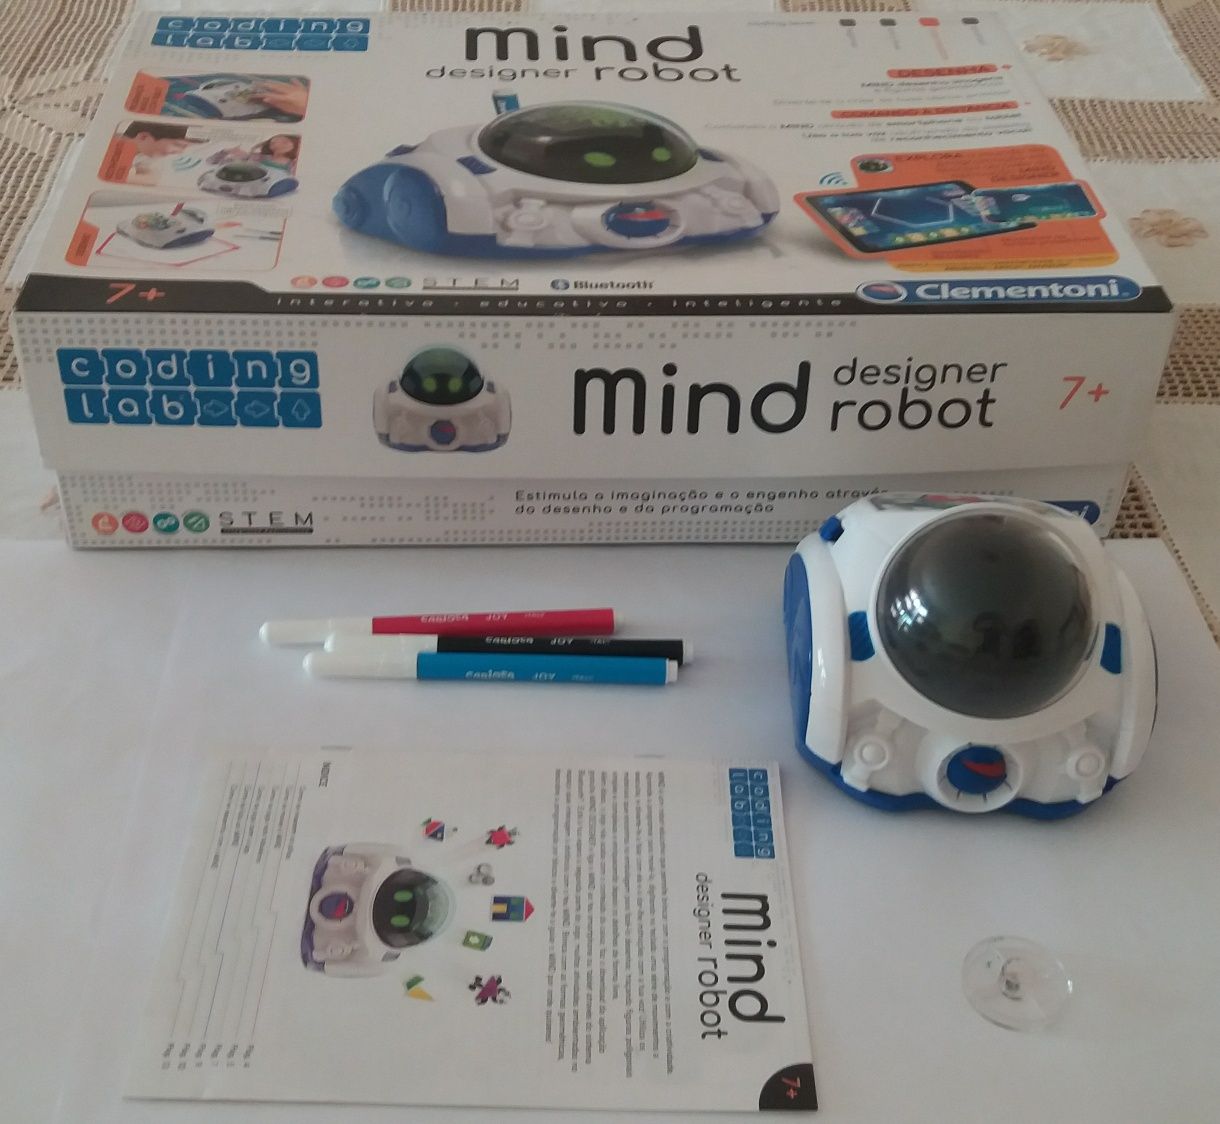 Mind designer robot